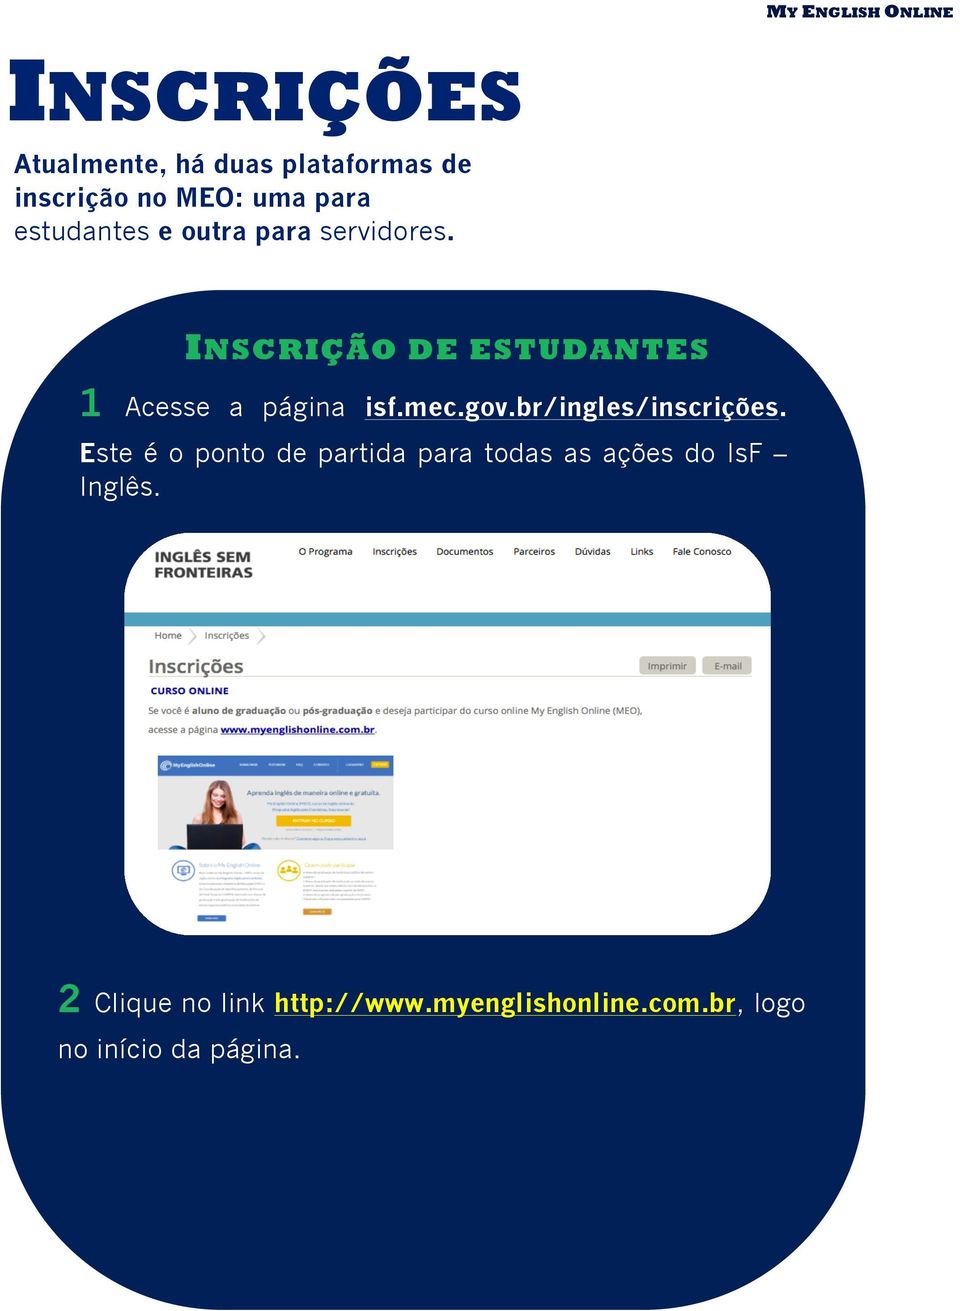 INSCRIÇÃO DE ESTUDANTES 1 Acesse a página isf.mec.gov.br/ingles/inscrições.